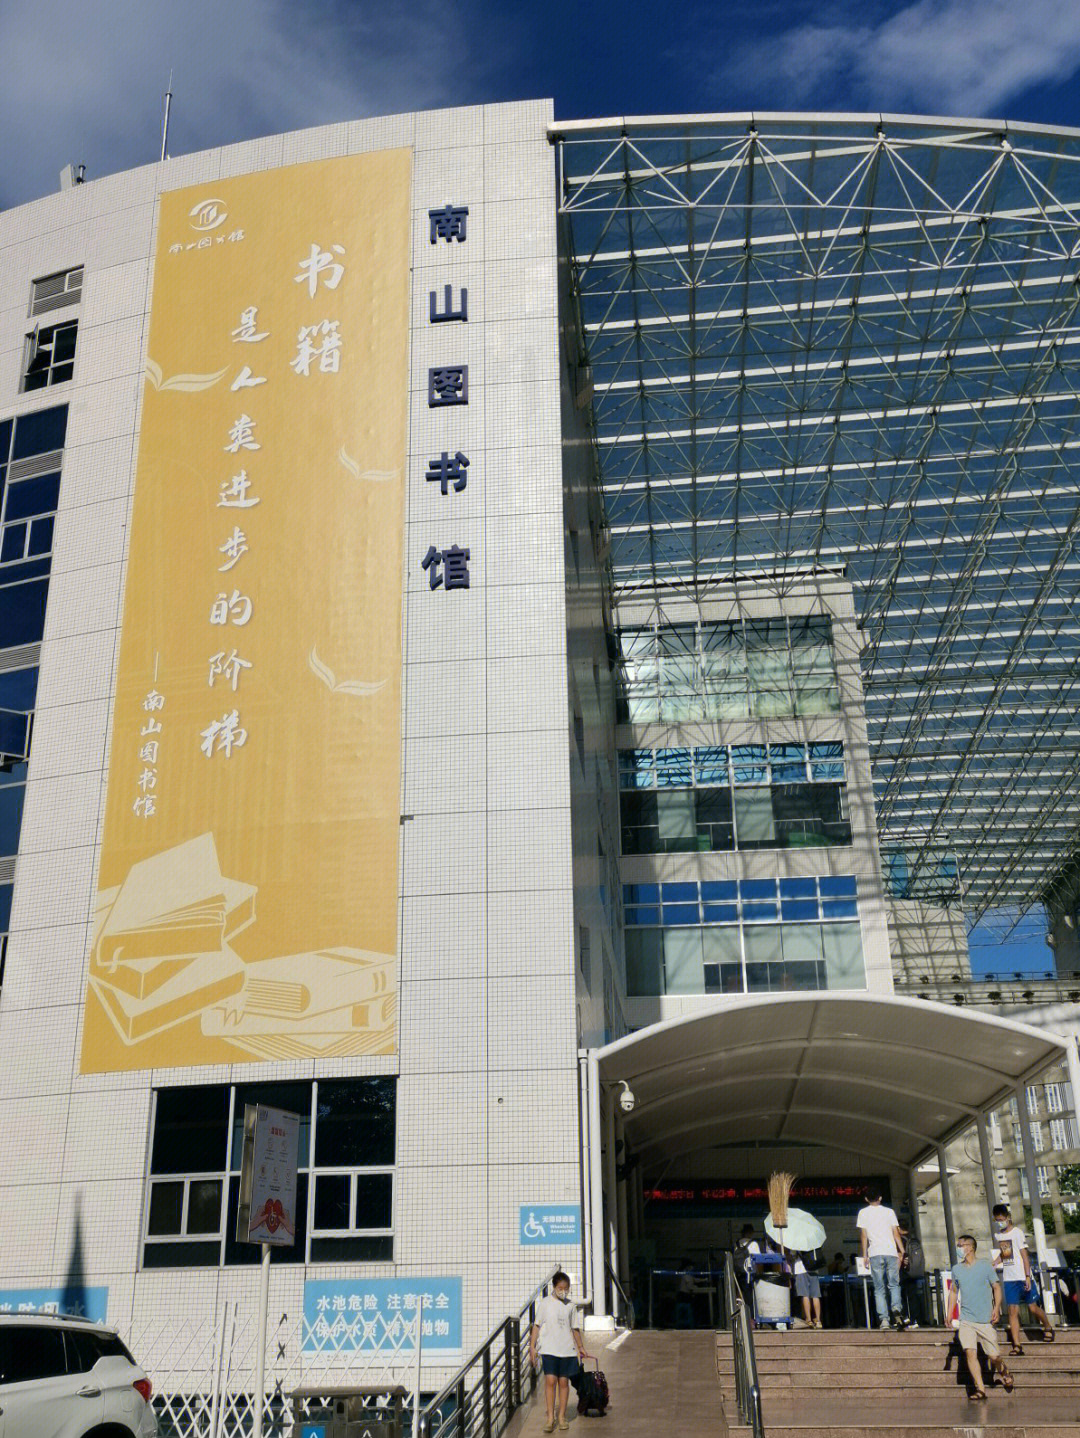 丈量深圳09南山图书馆总馆